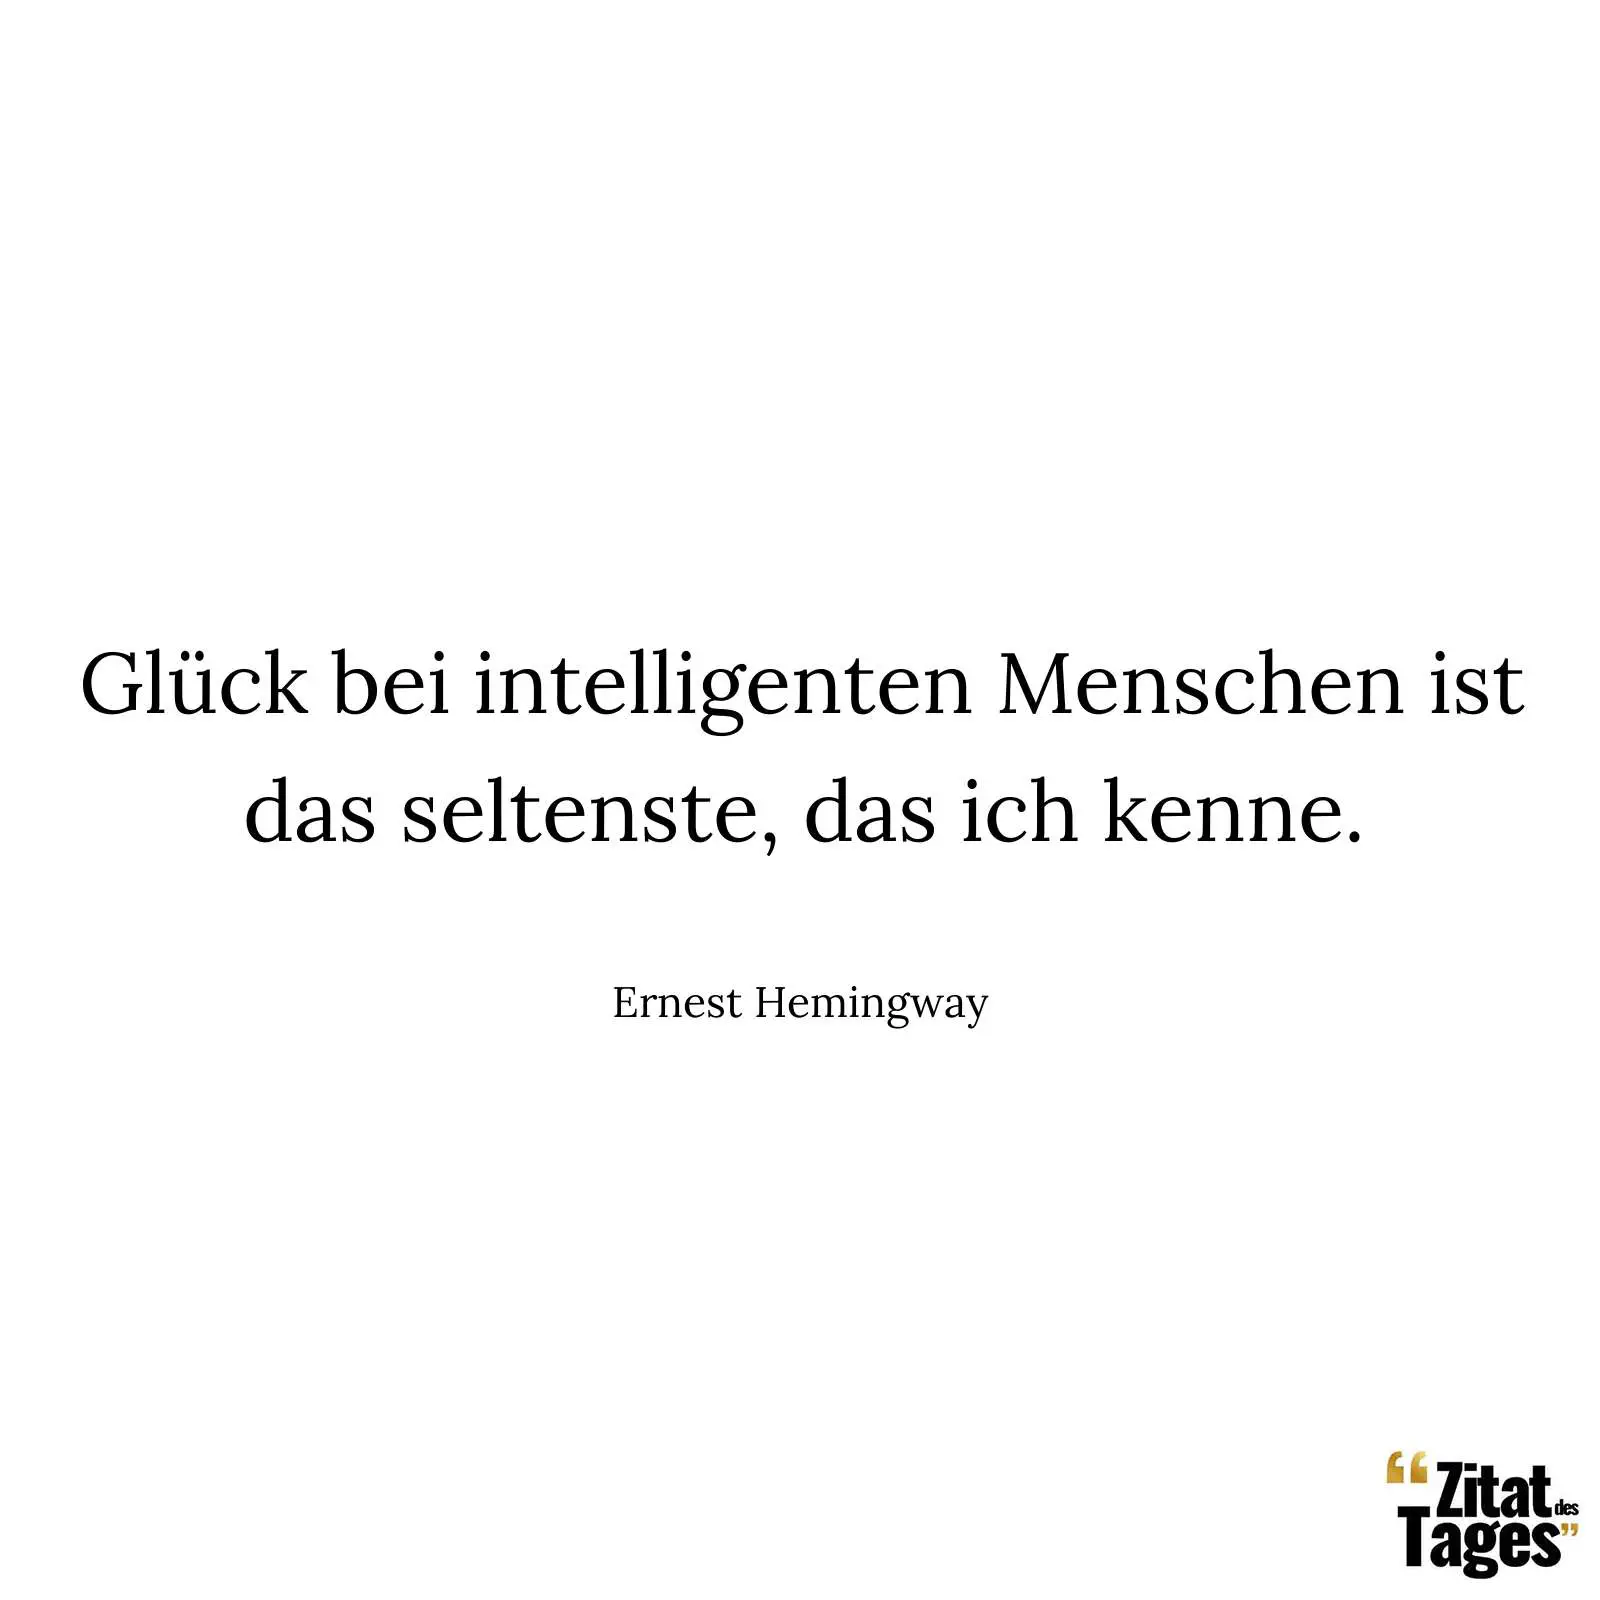 Glück bei intelligenten Menschen ist das seltenste, das ich kenne. - Ernest Hemingway